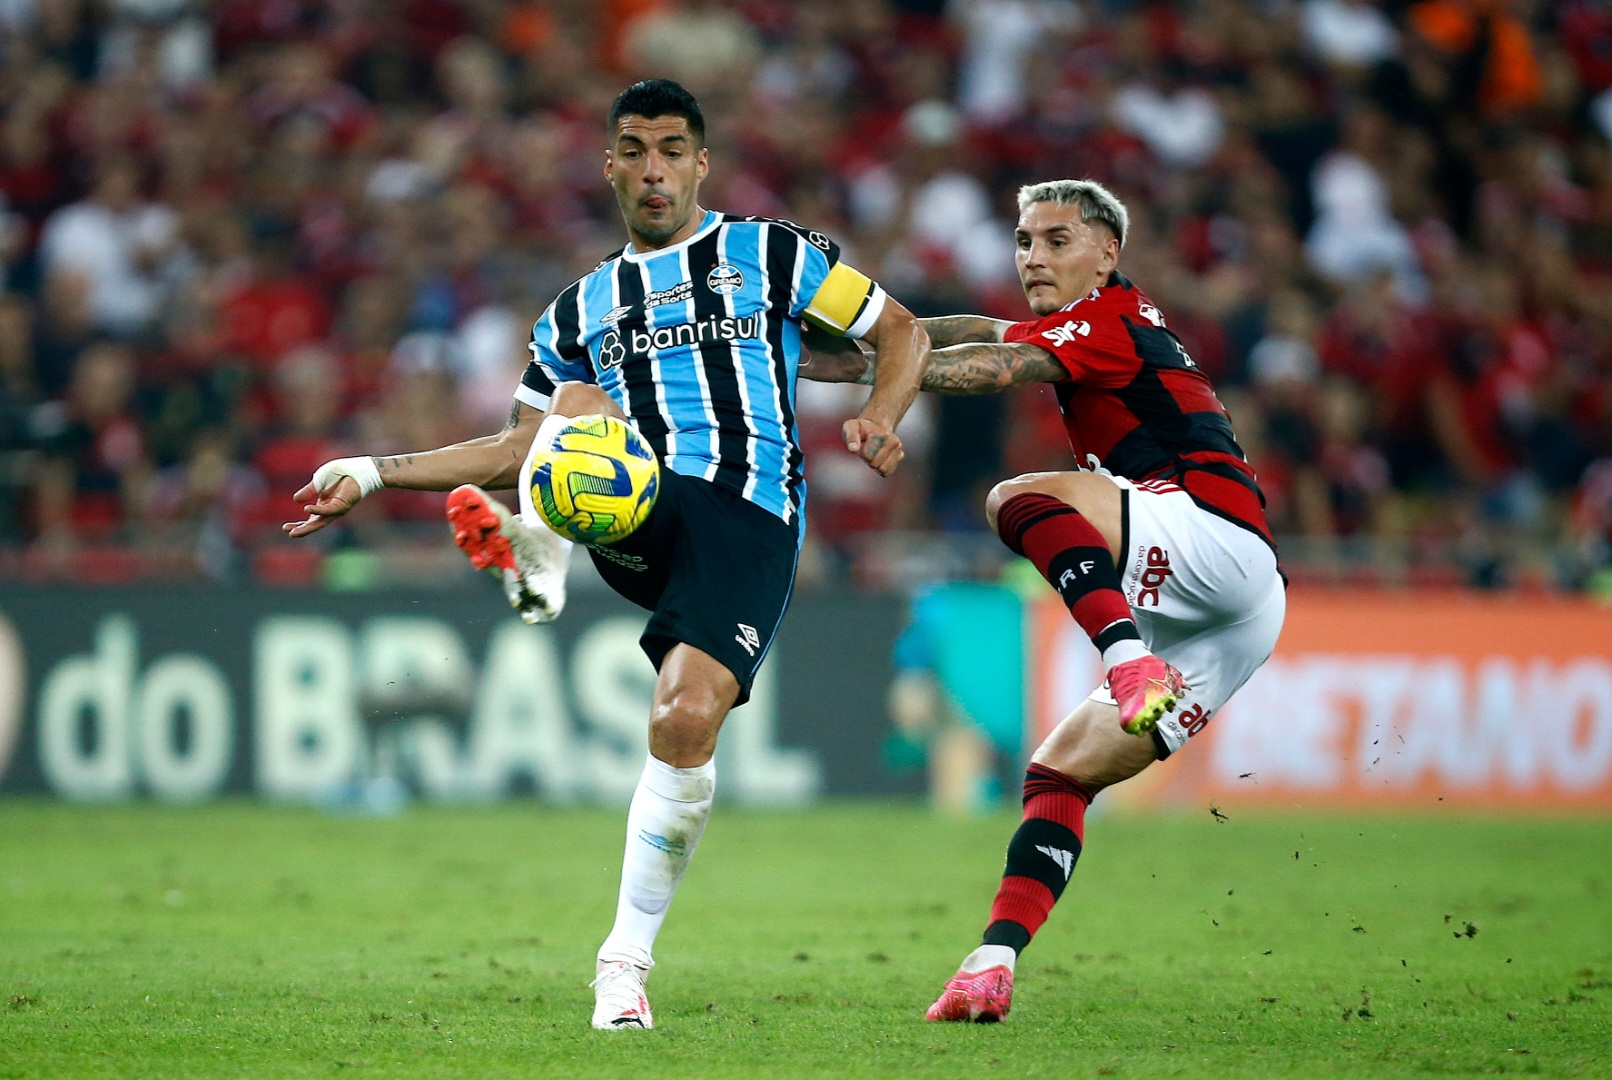 #CopadoBrasil: Flamengo vence Grêmio por 1 a 0 e avança à final